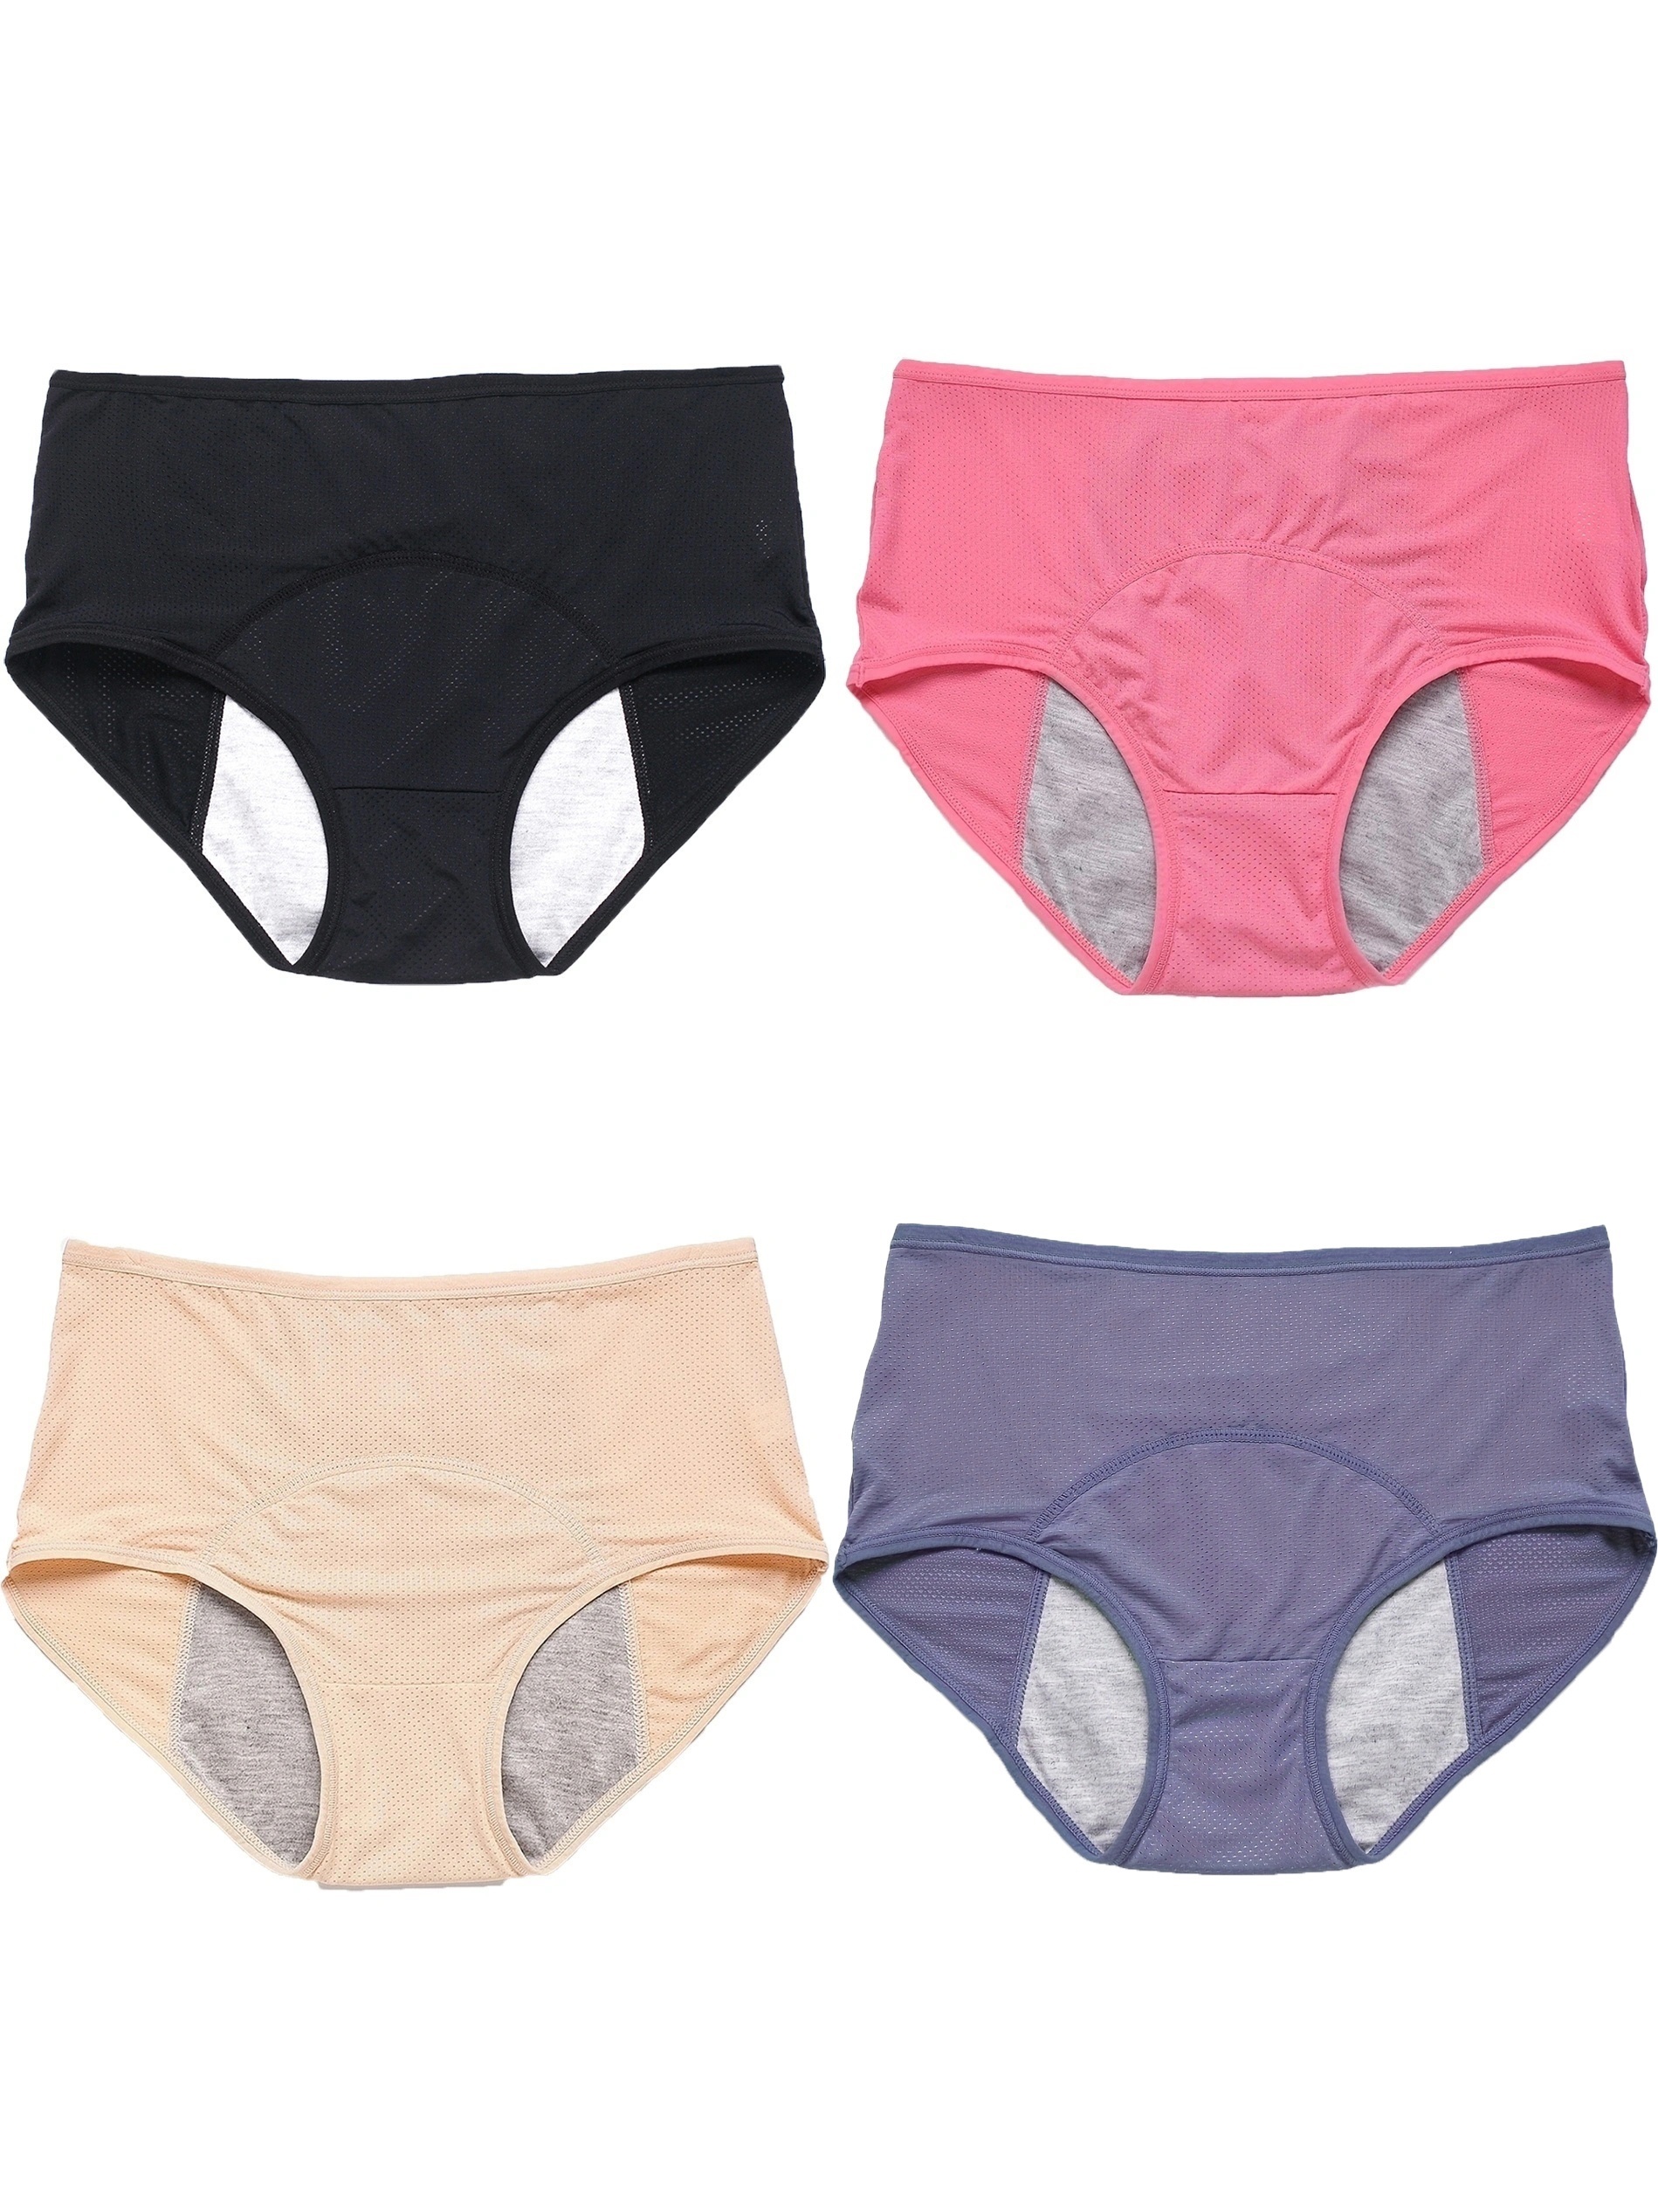 Leak Proof Menstrual Panties For Women, L-8xl Plus Size Cotton